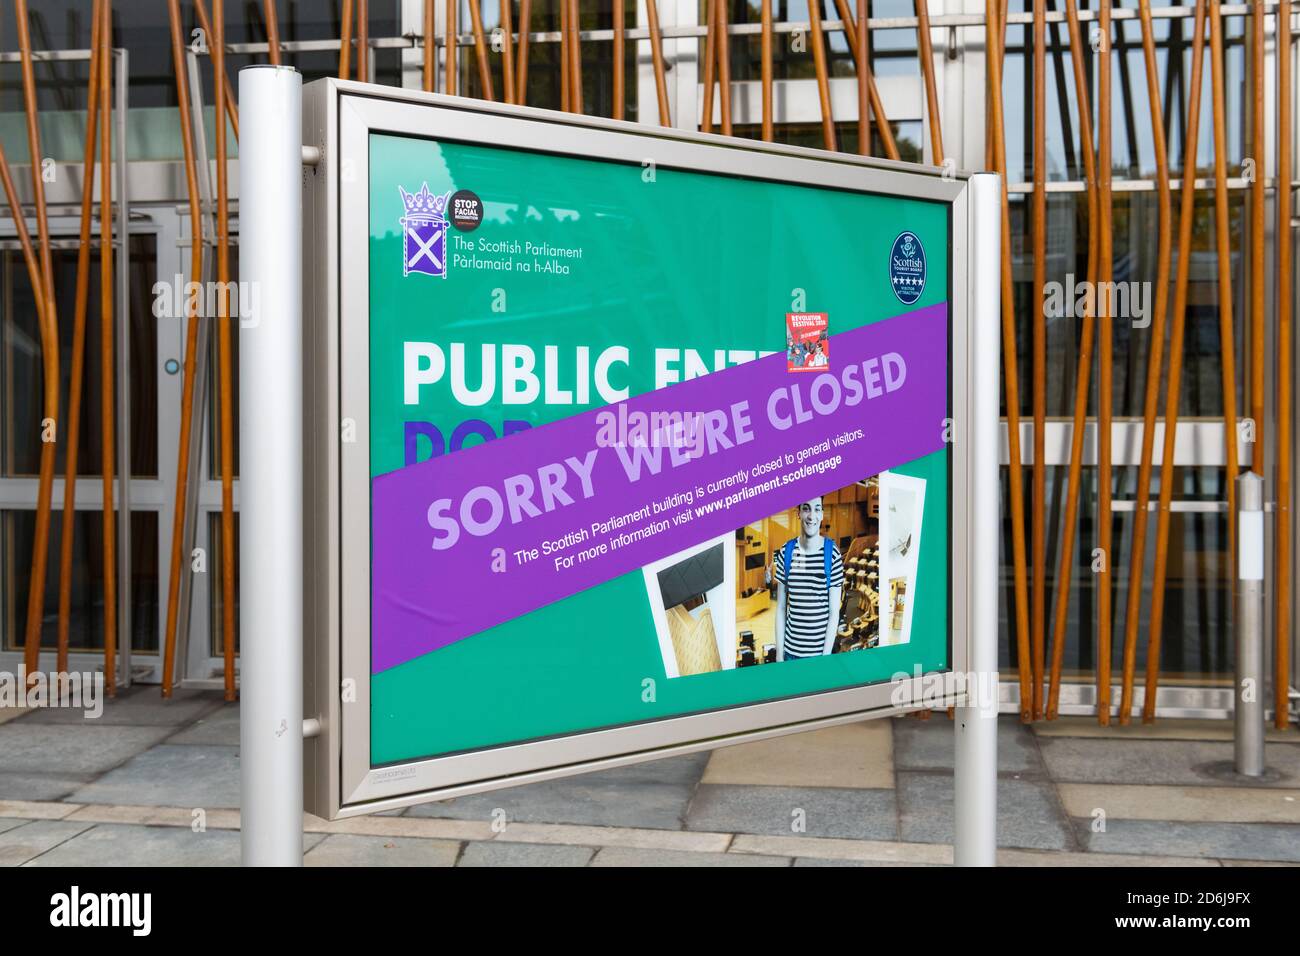 Schottisches Parlament für allgemeine Besucher während Coronavirus Pandemie 2020 Zeichen geschlossen, Edinburgh, Schottland, Großbritannien Stockfoto